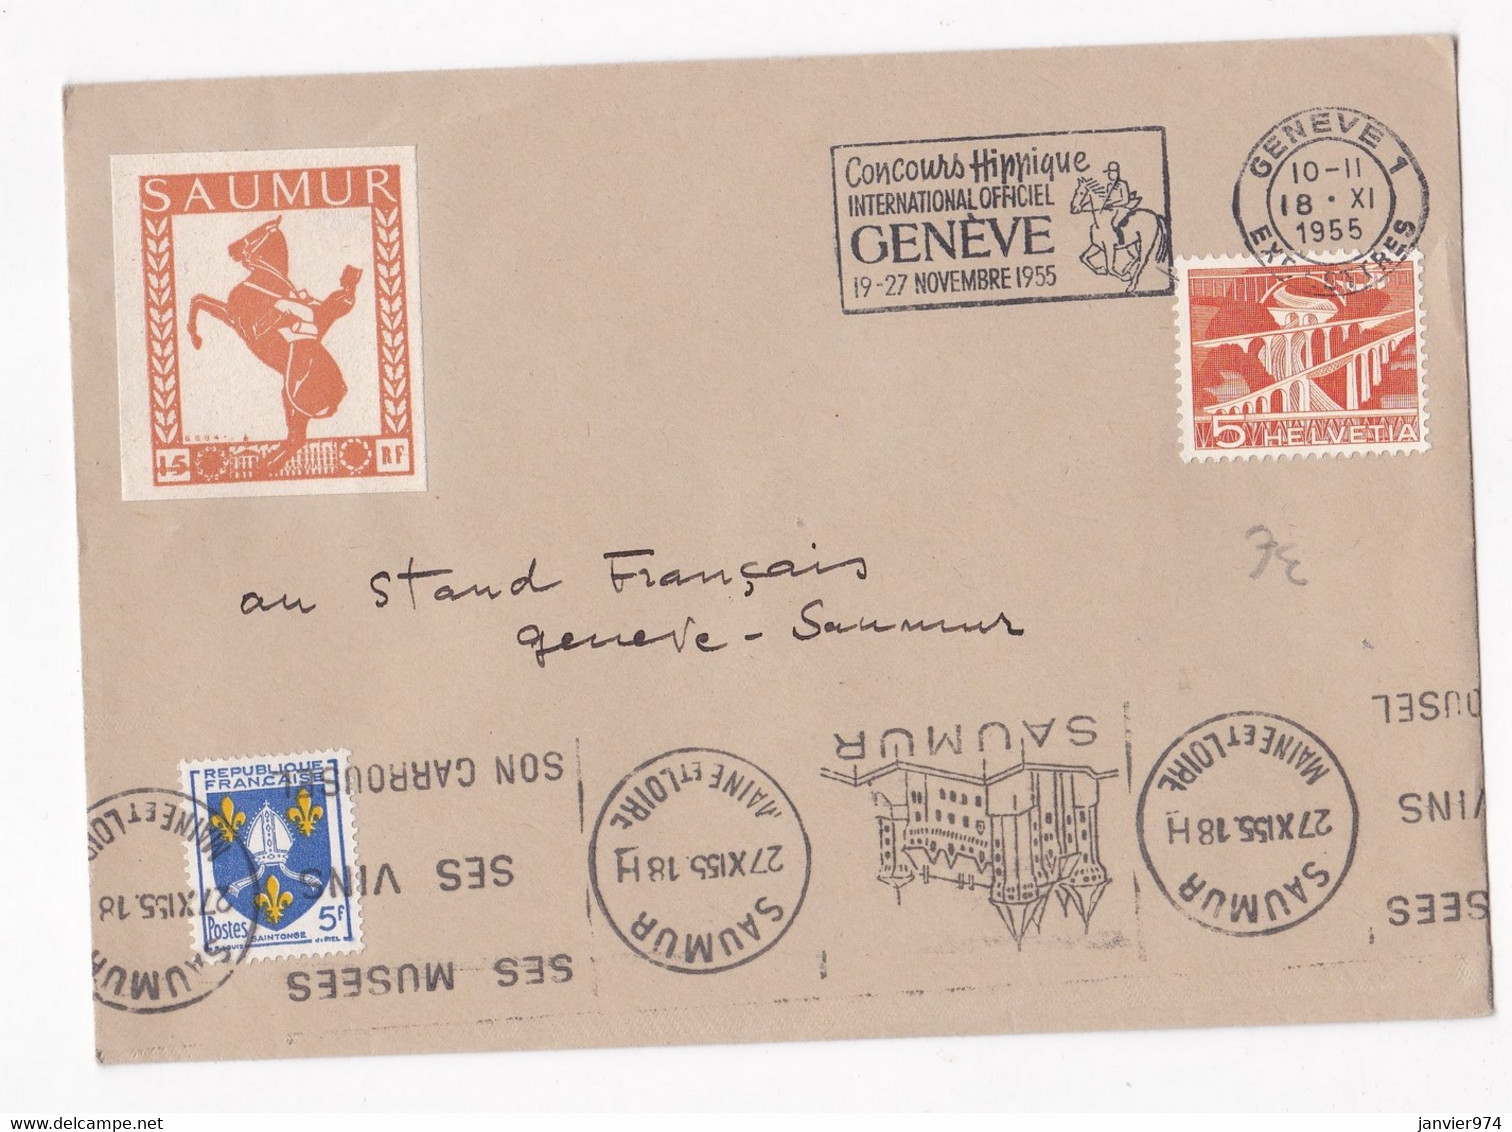 Enveloppe Affranchissement France Suisse 1955 Concours Hippique De Genève. Vignette Saumur. - Paardensport